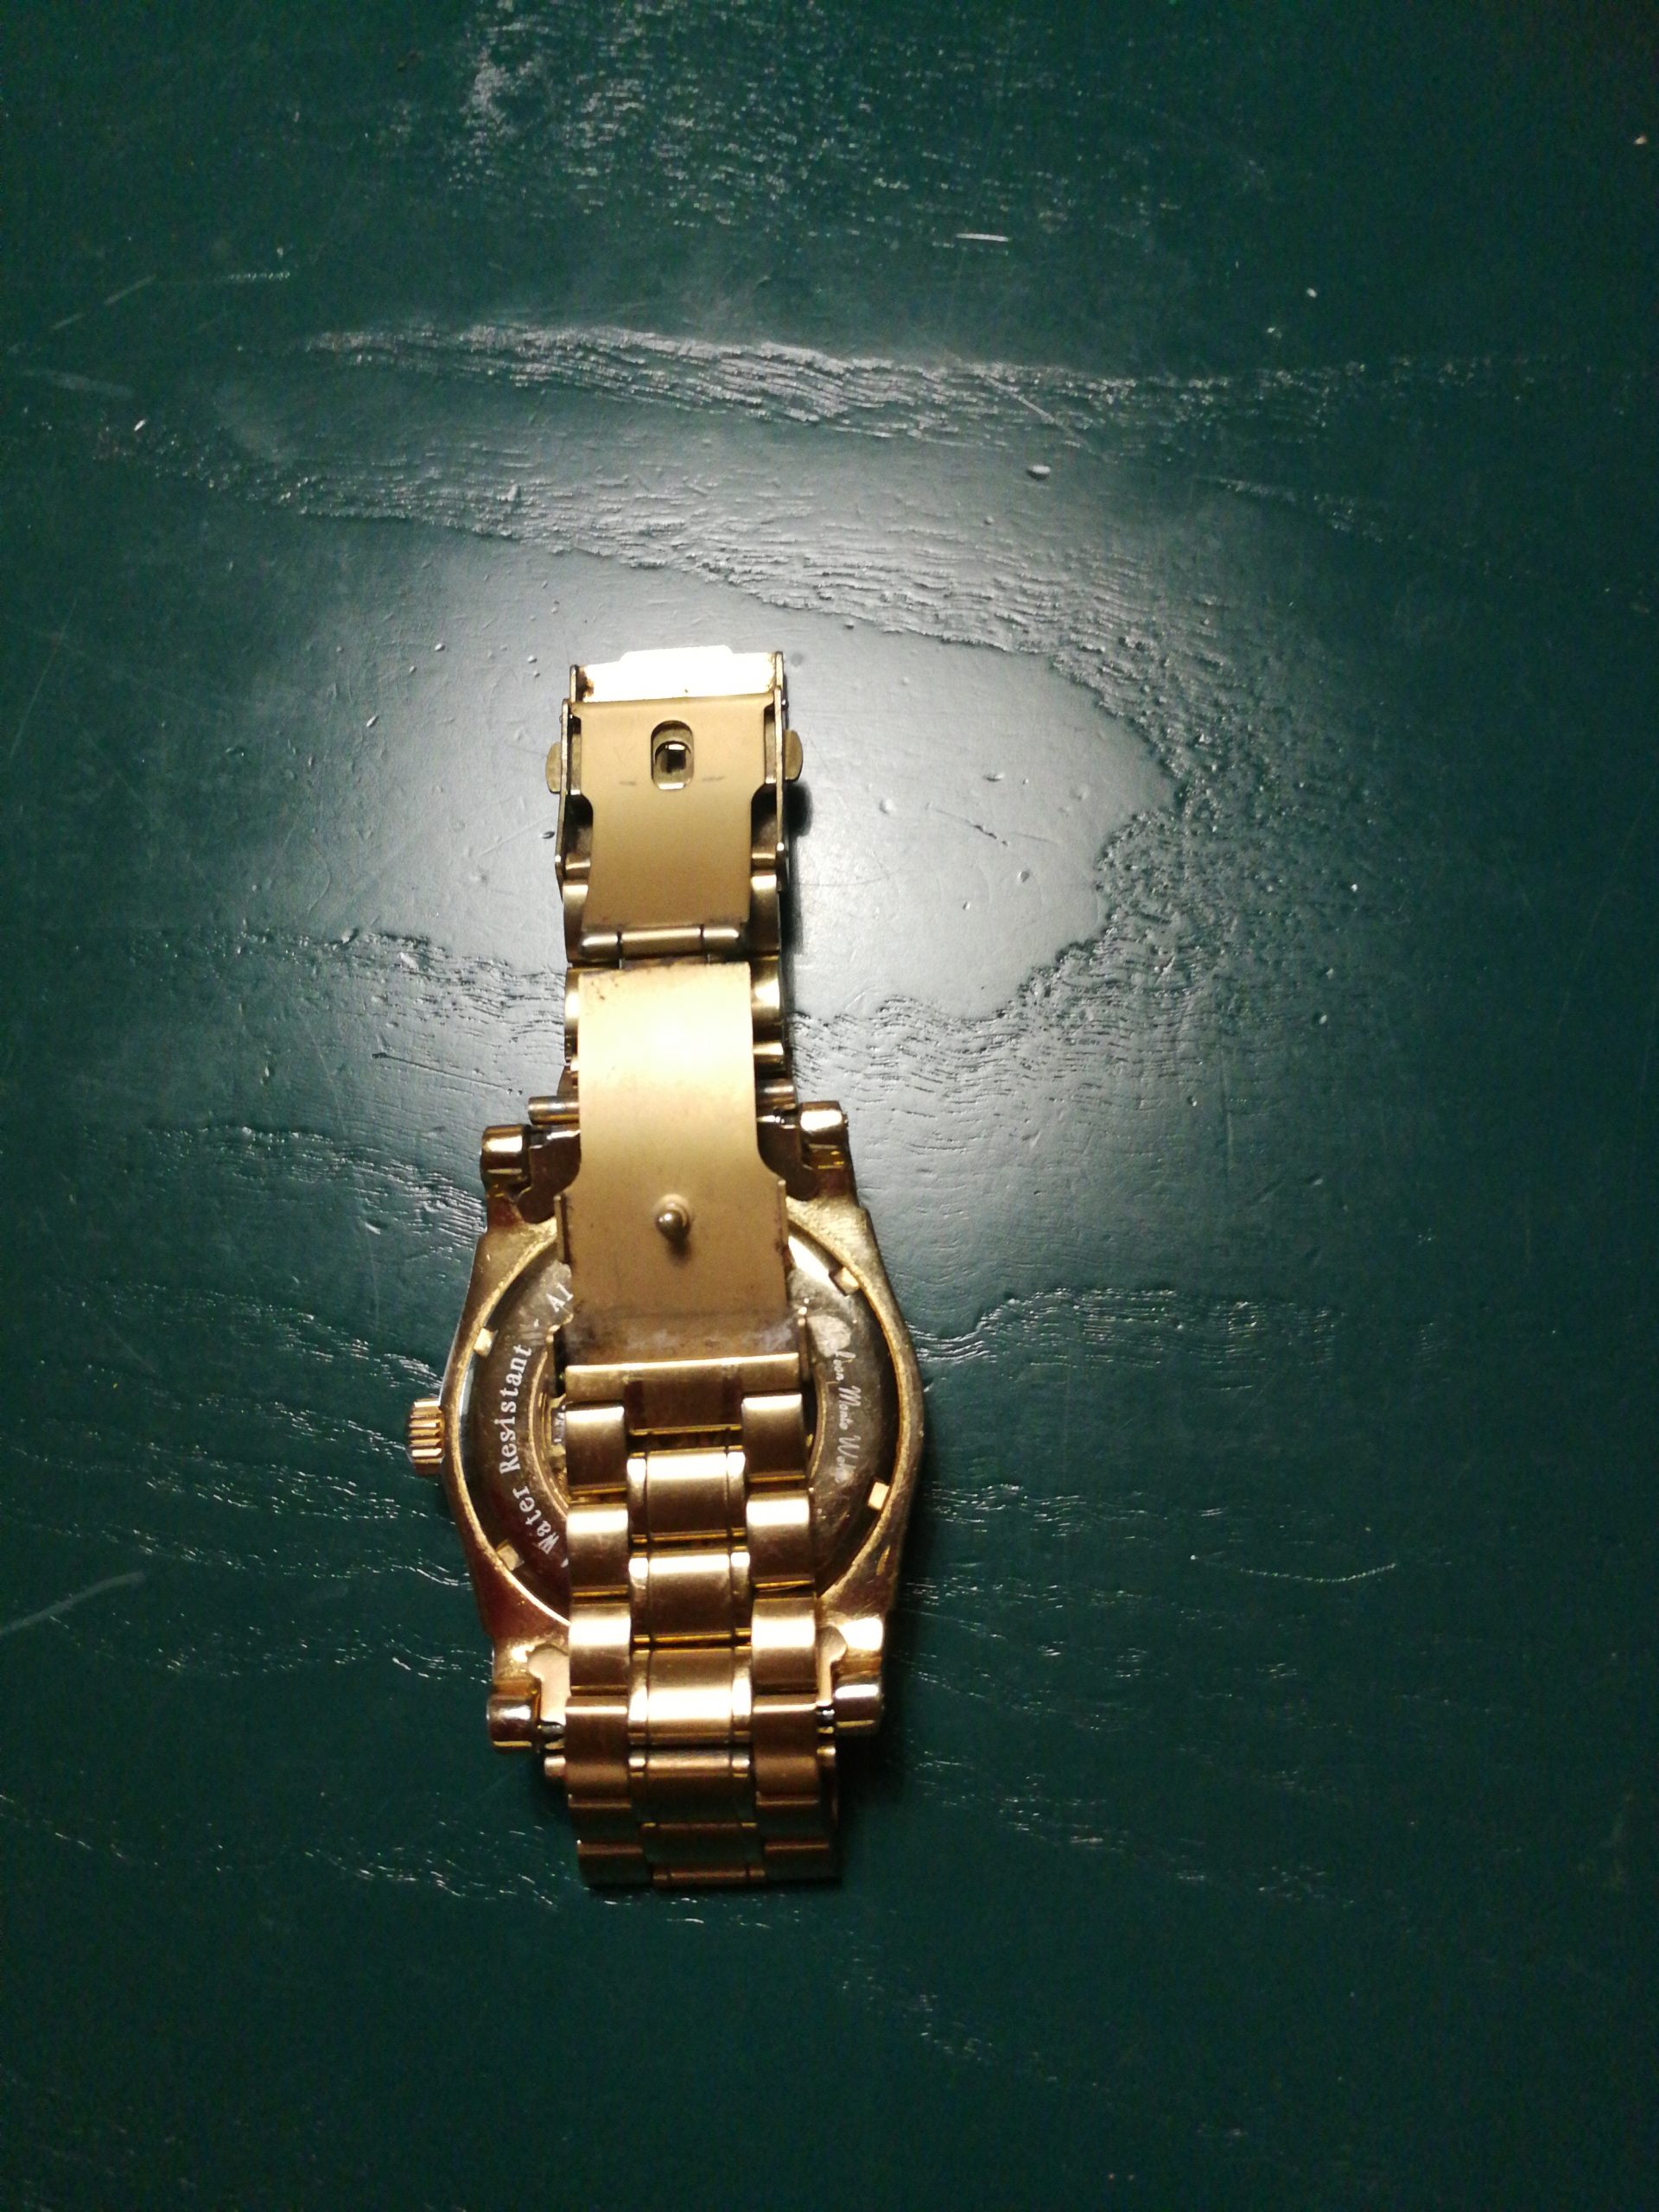 Hallo ich wollte diese Uhren schätzen lassen – value of the watch